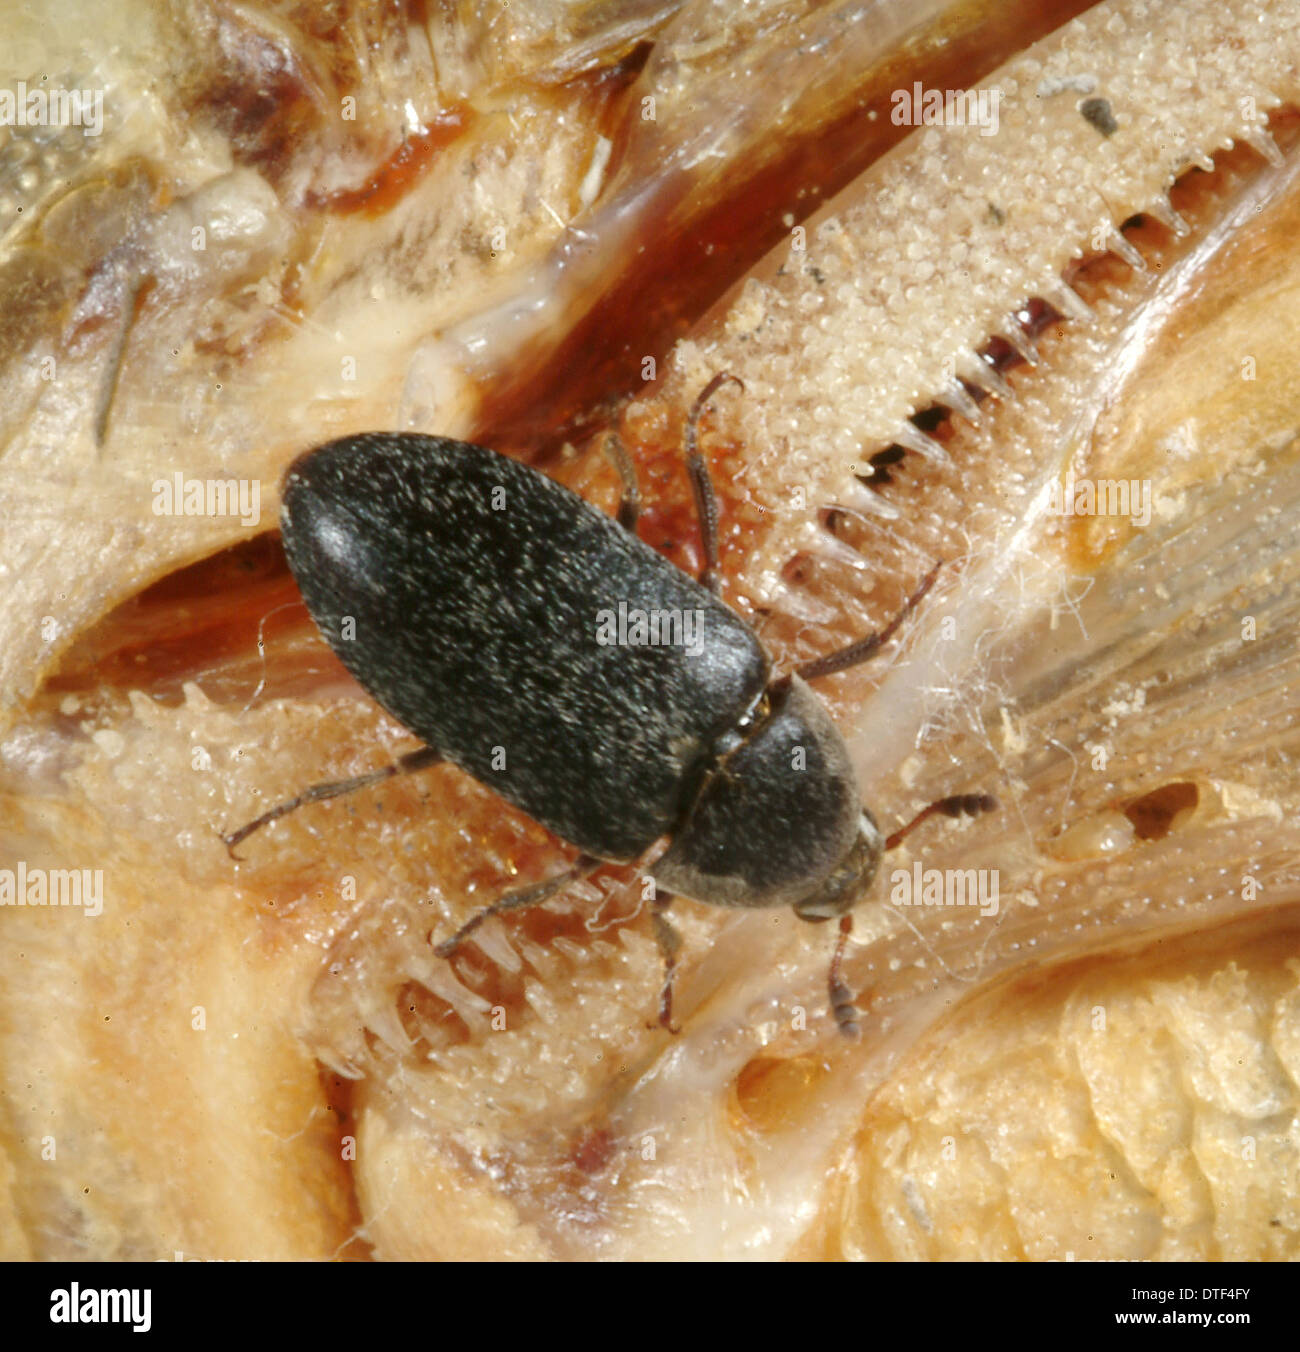 Dermestes maculatus, coléoptère mangeuse de chair Banque D'Images